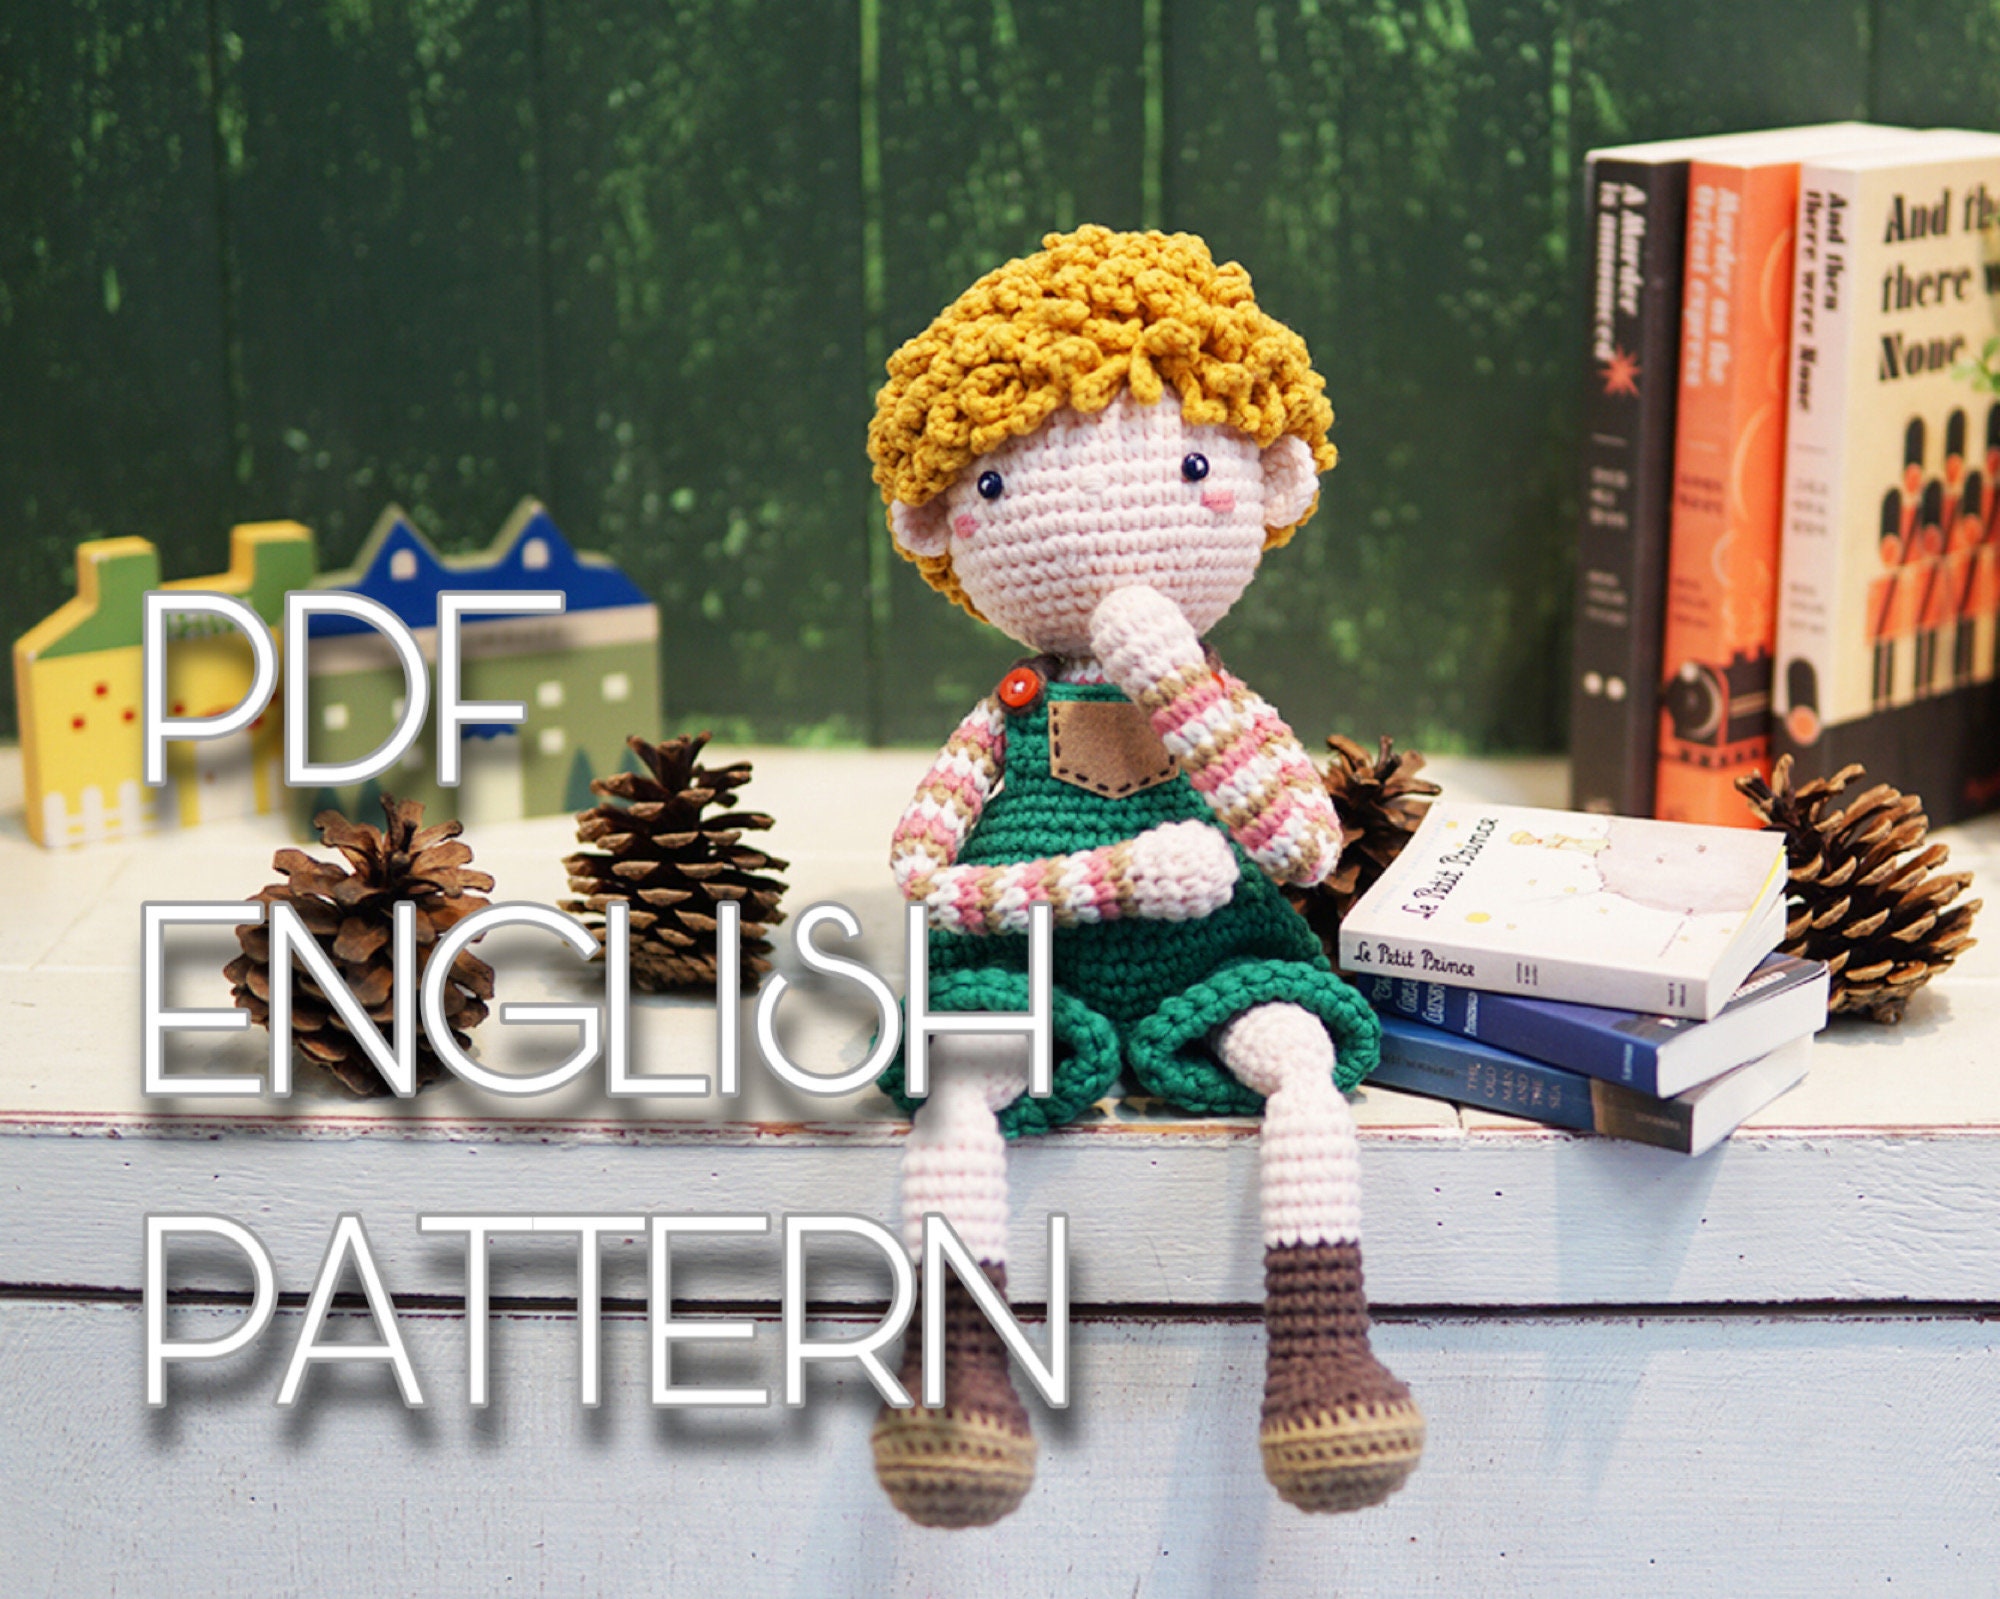 Crochet Cafe Amigurumi Book Review - Tiny Curl Crochet